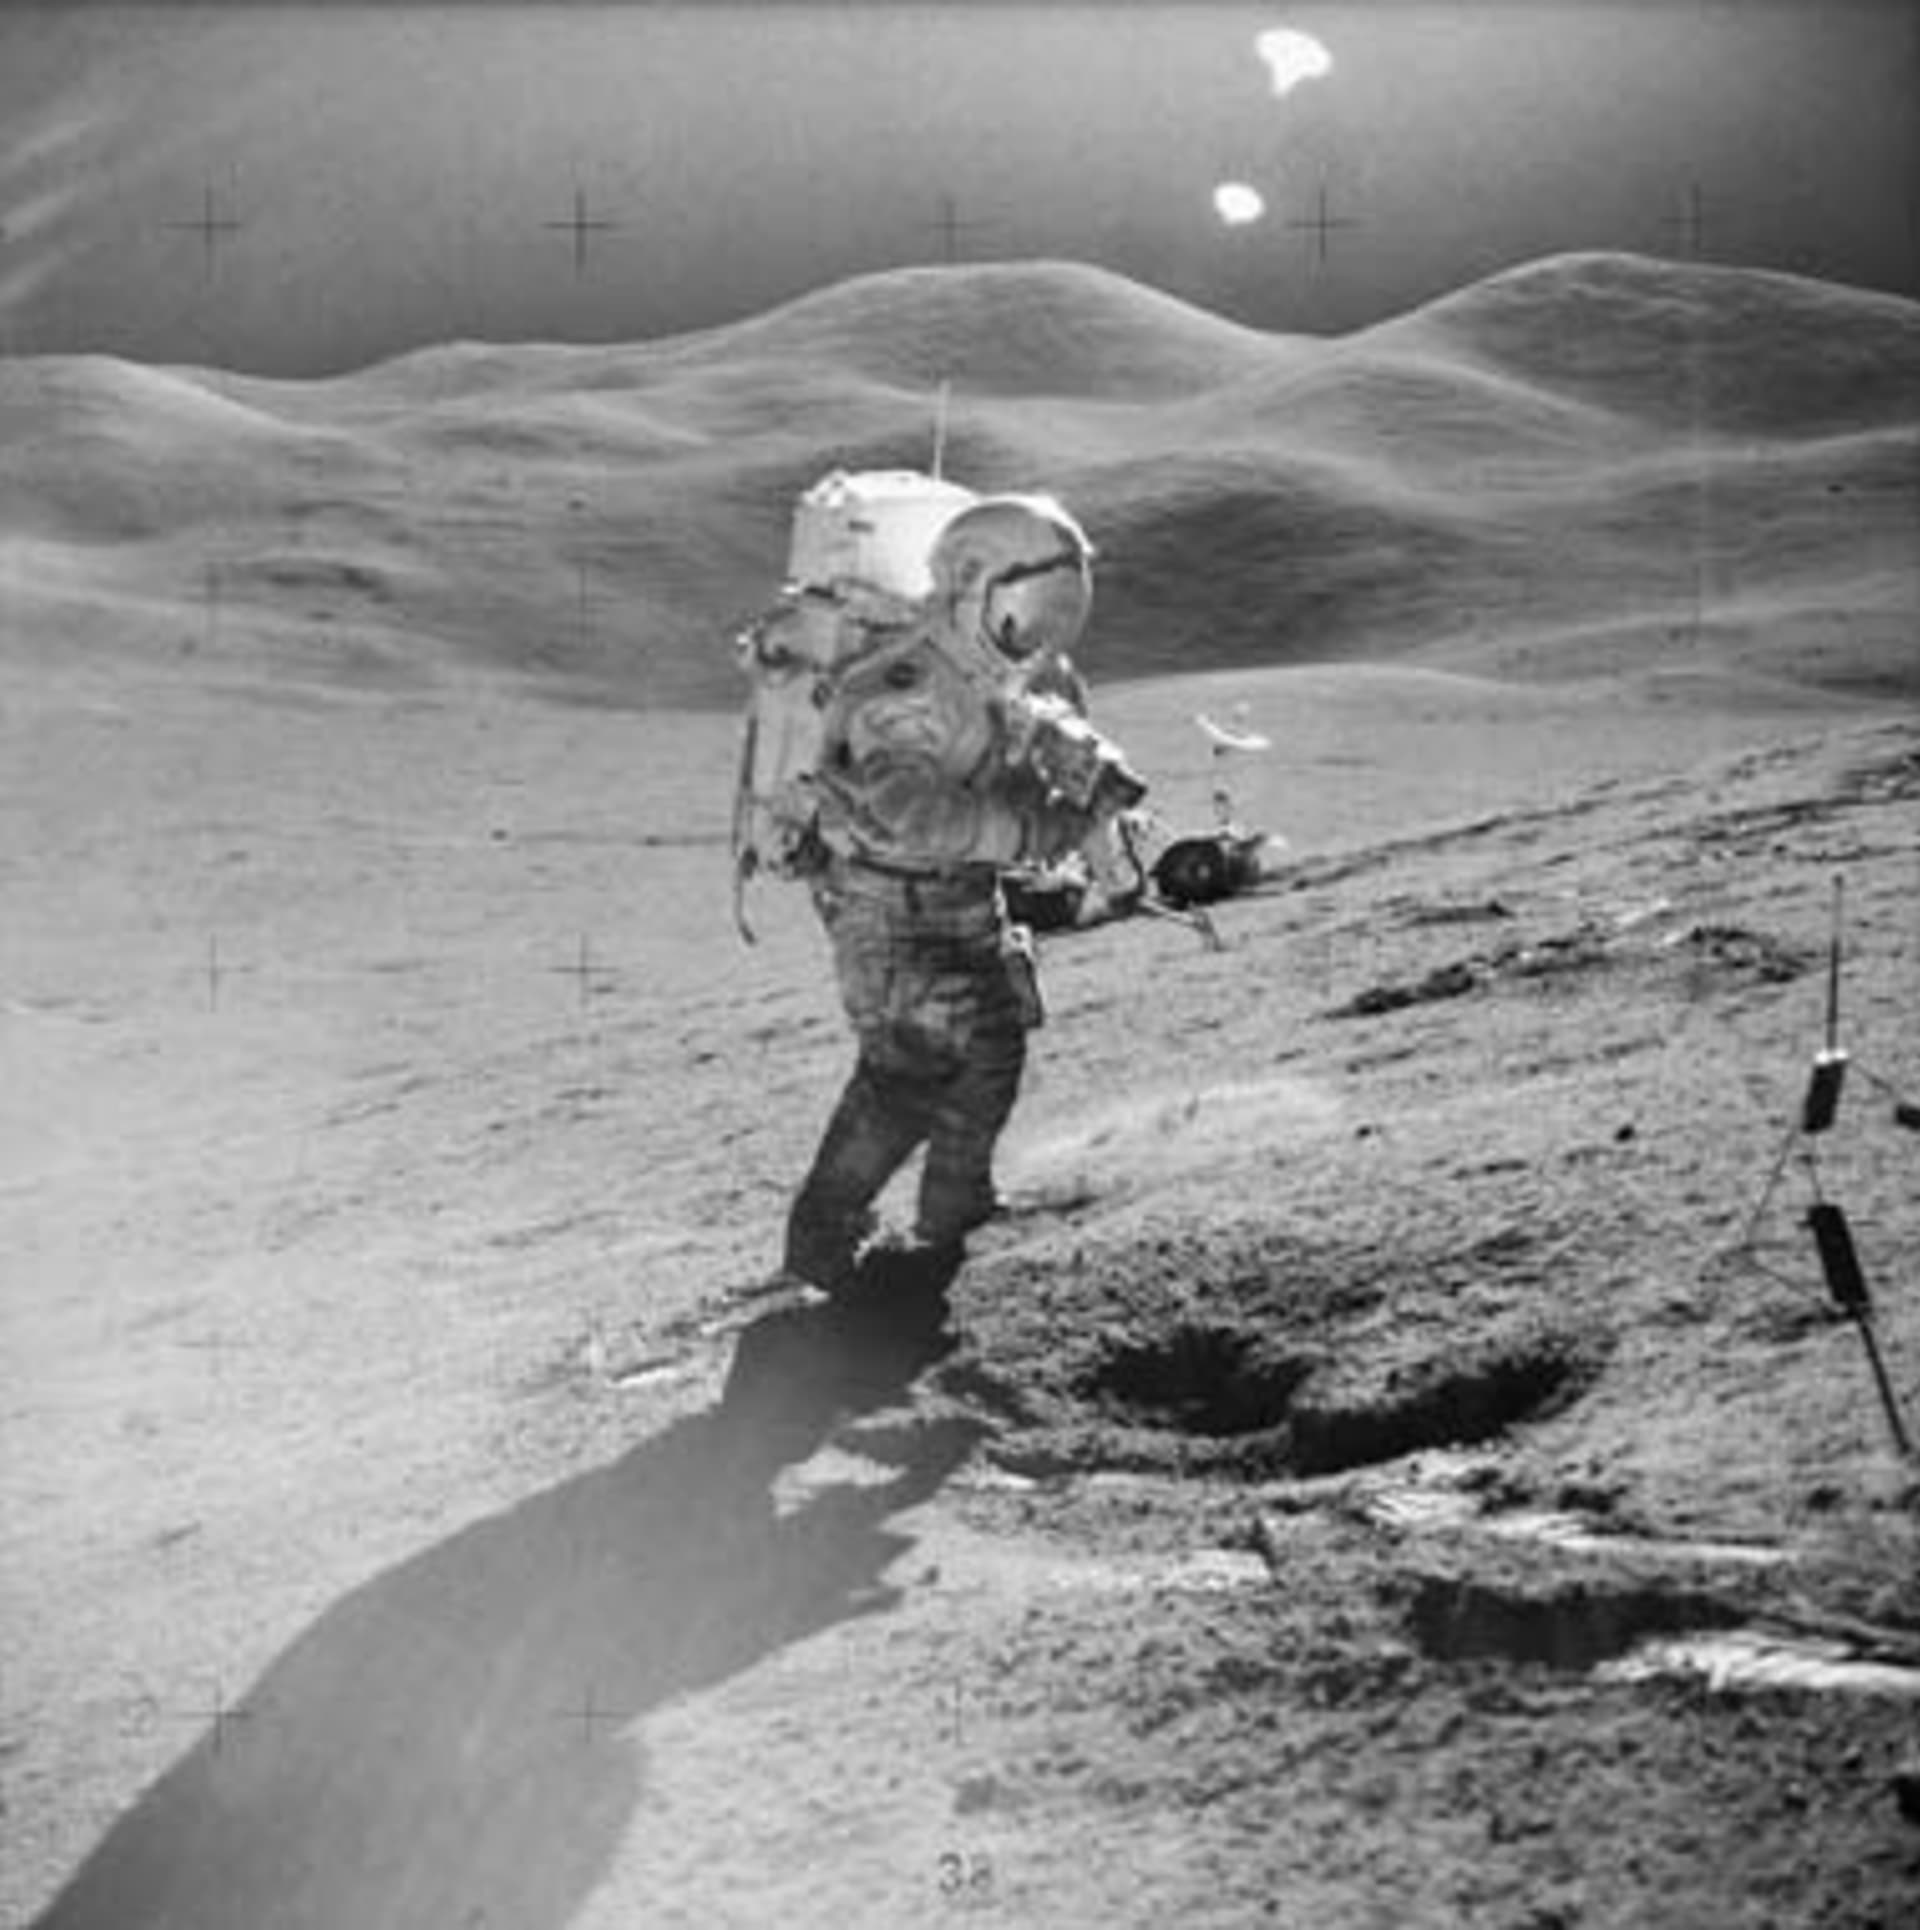 Podivná světla na obzoru "sledují" Davida Scotta z mise Apollo 15. Jenže nejde o UFO, ale odlesk čočky fotoaparátu